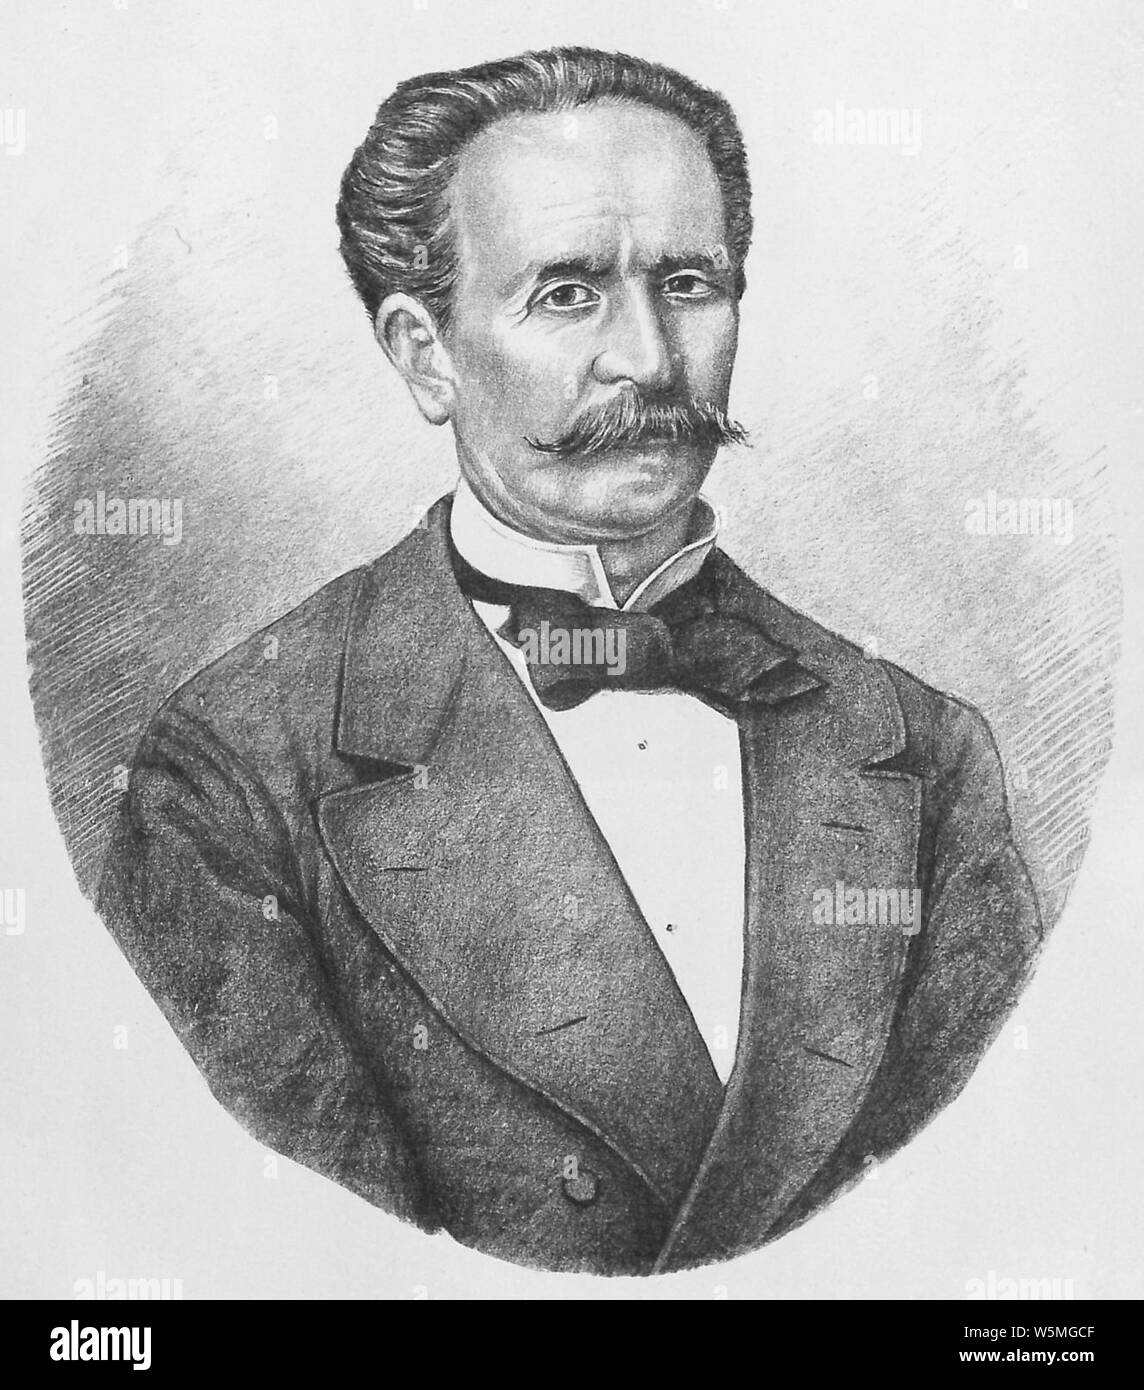 D. William - Alexandre Const. Plagino - Ancien Ministre des affaires étrangerès. Stock Photo